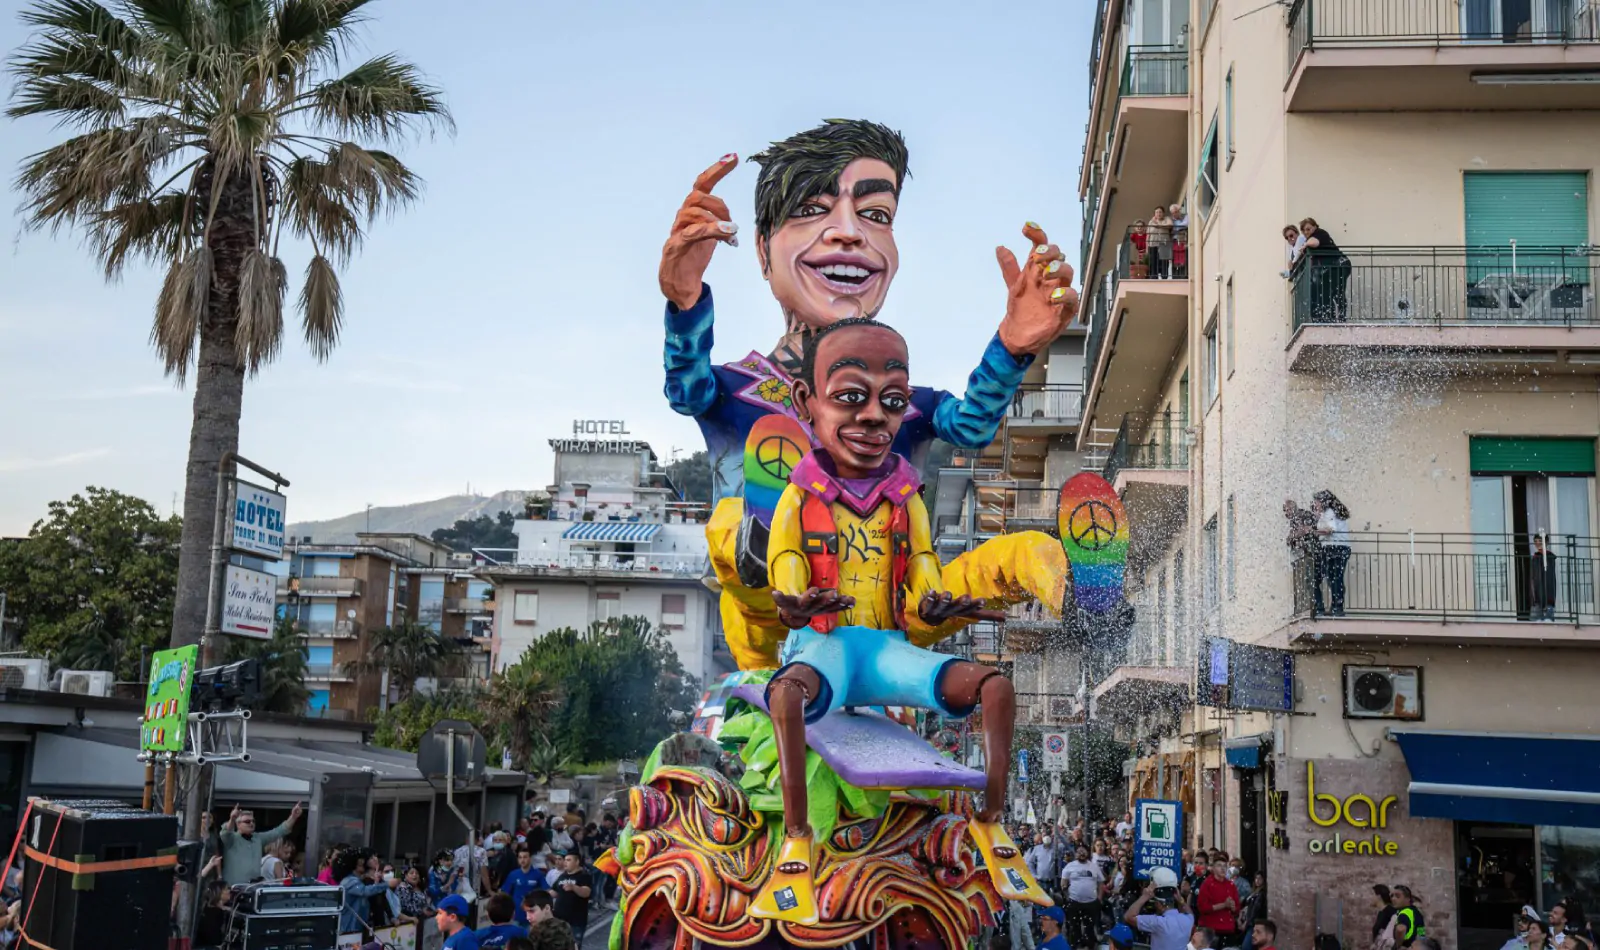 Carnevale a Napoli, per le strade della città bambini vestiti a festa